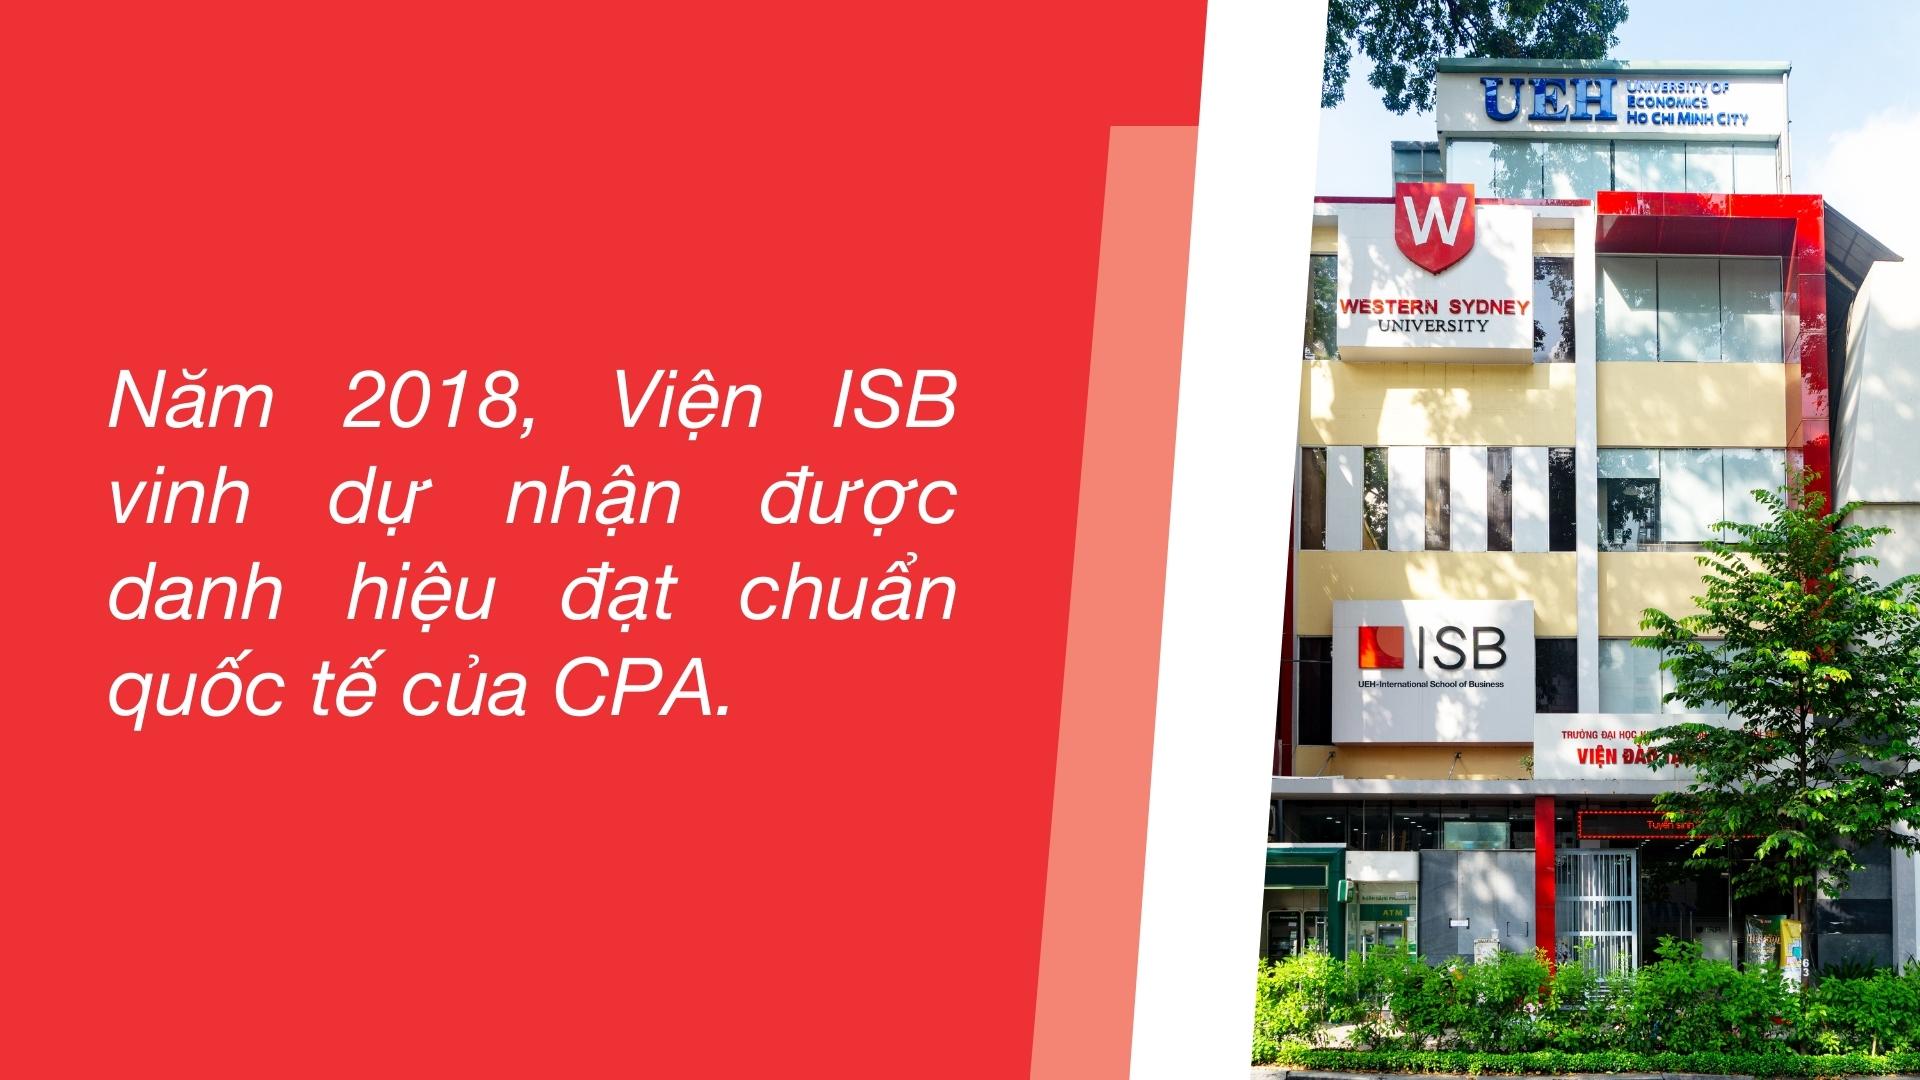 Năm 2018, Viện ISB vinh dự nhận được danh hiệu đạt chuẩn quốc tế của CPA đầy danh giá